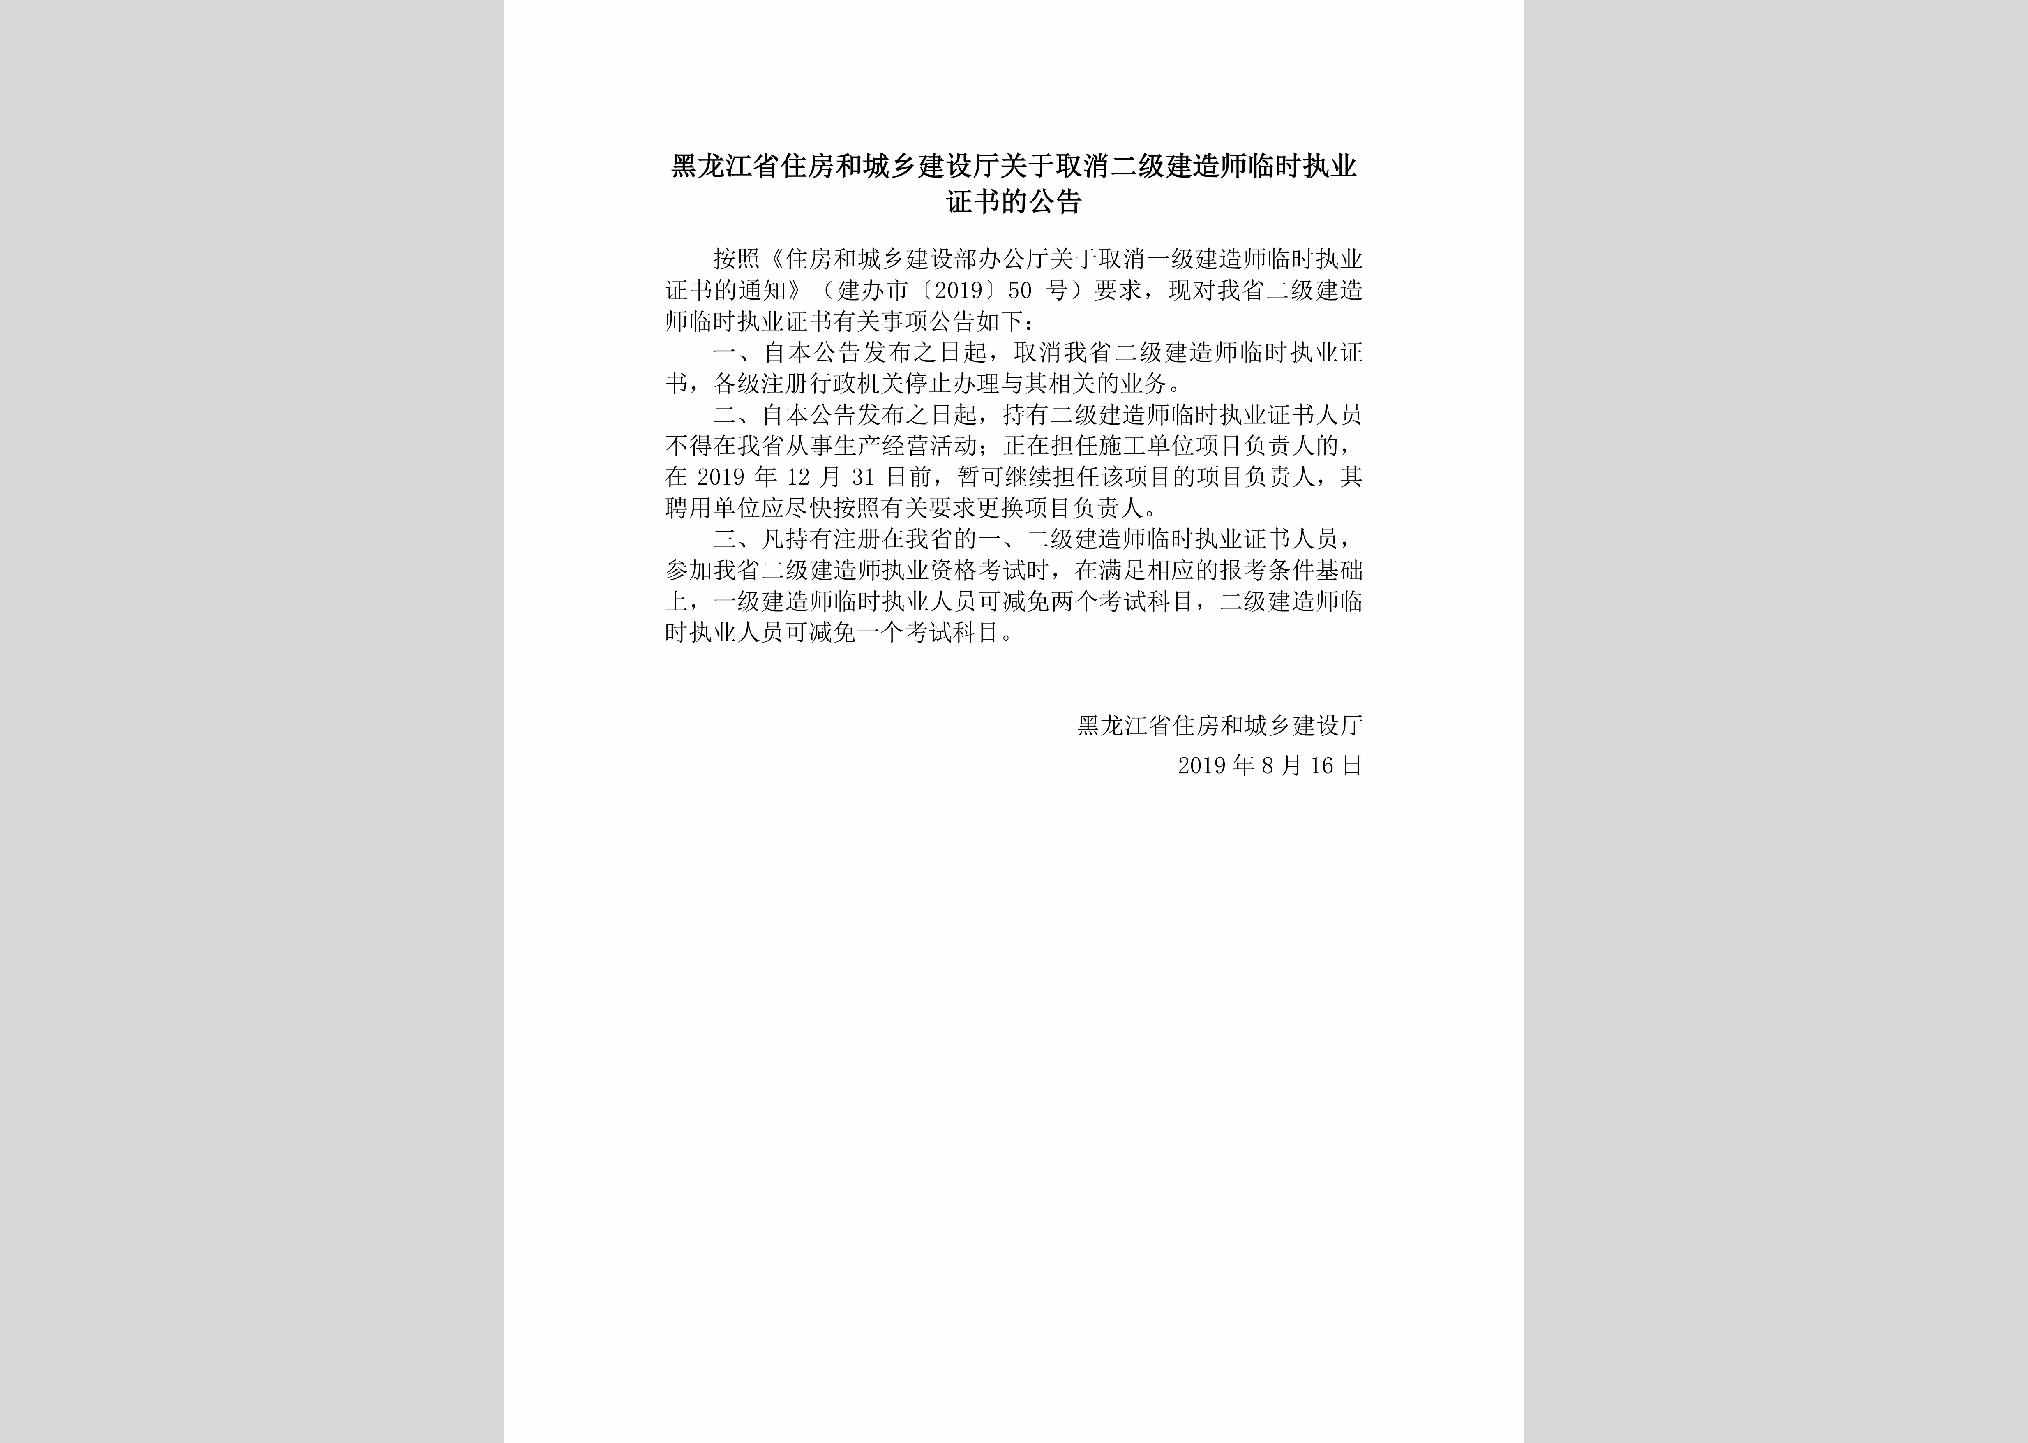 HLJ-QXEJJZSL-2019：黑龙江省住房和城乡建设厅关于取消二级建造师临时执业证书的公告